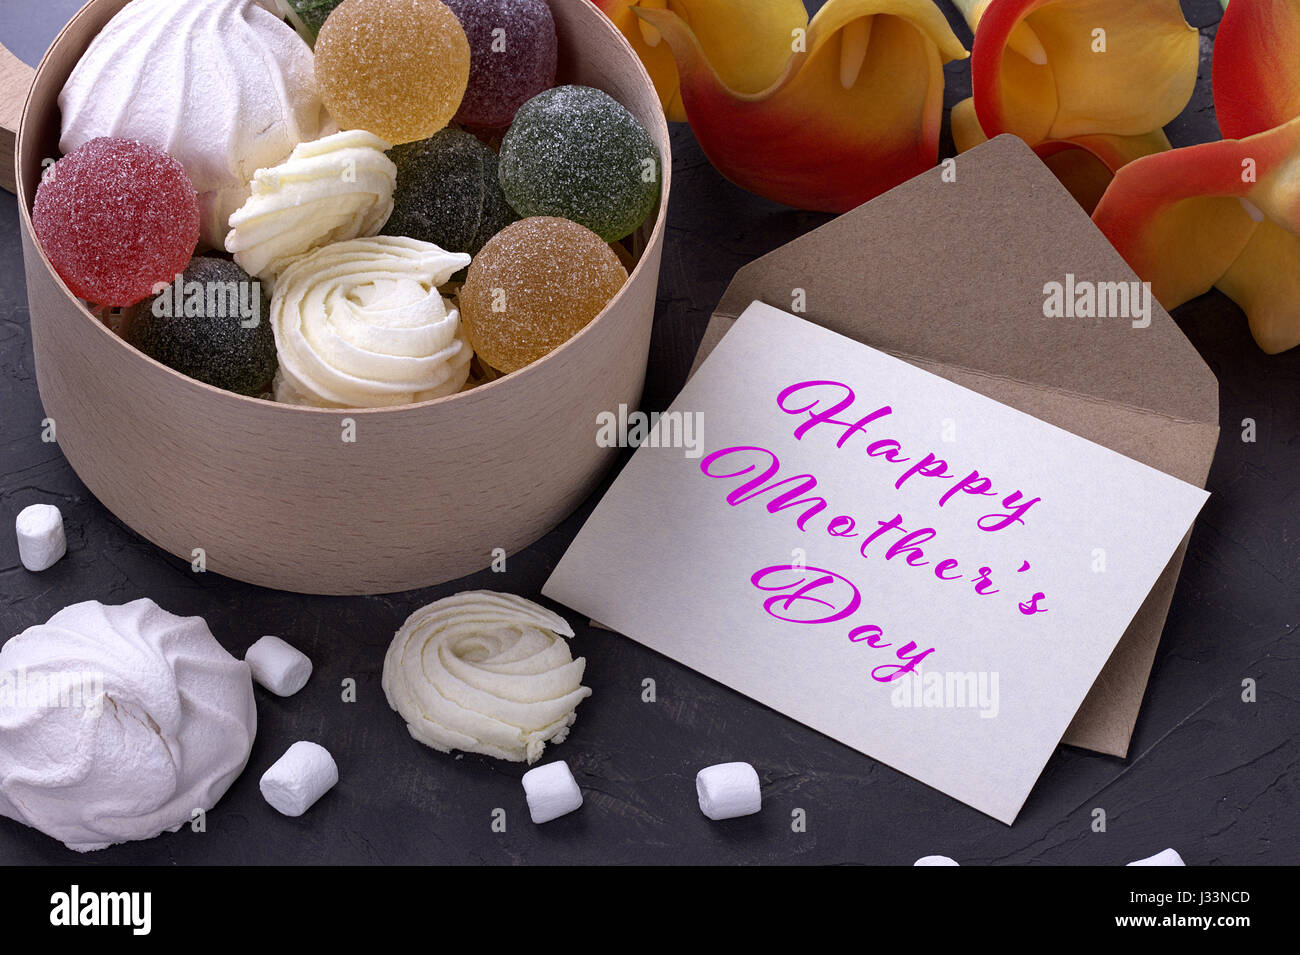 Bouquet de callas jaune rouge avec des guimauves marmelade dans une boîte ronde en bois et enveloppe avec lettrage heureux mères le background de béton gris Banque D'Images